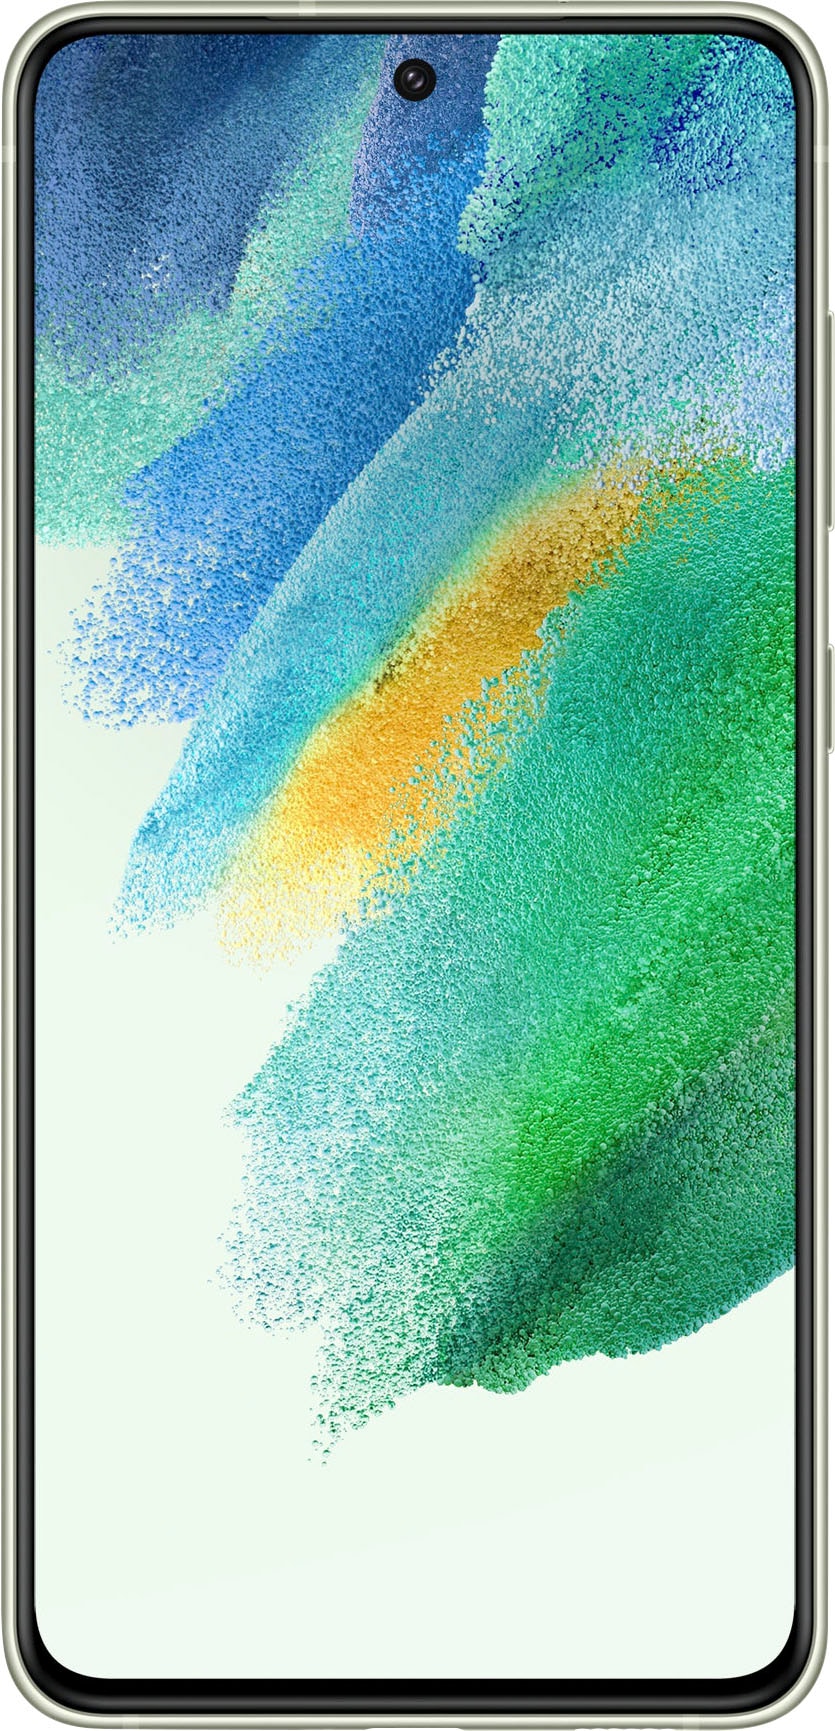 Samsung - Galaxy S21 FE 5G 128GB - Olive (Verizon)_1